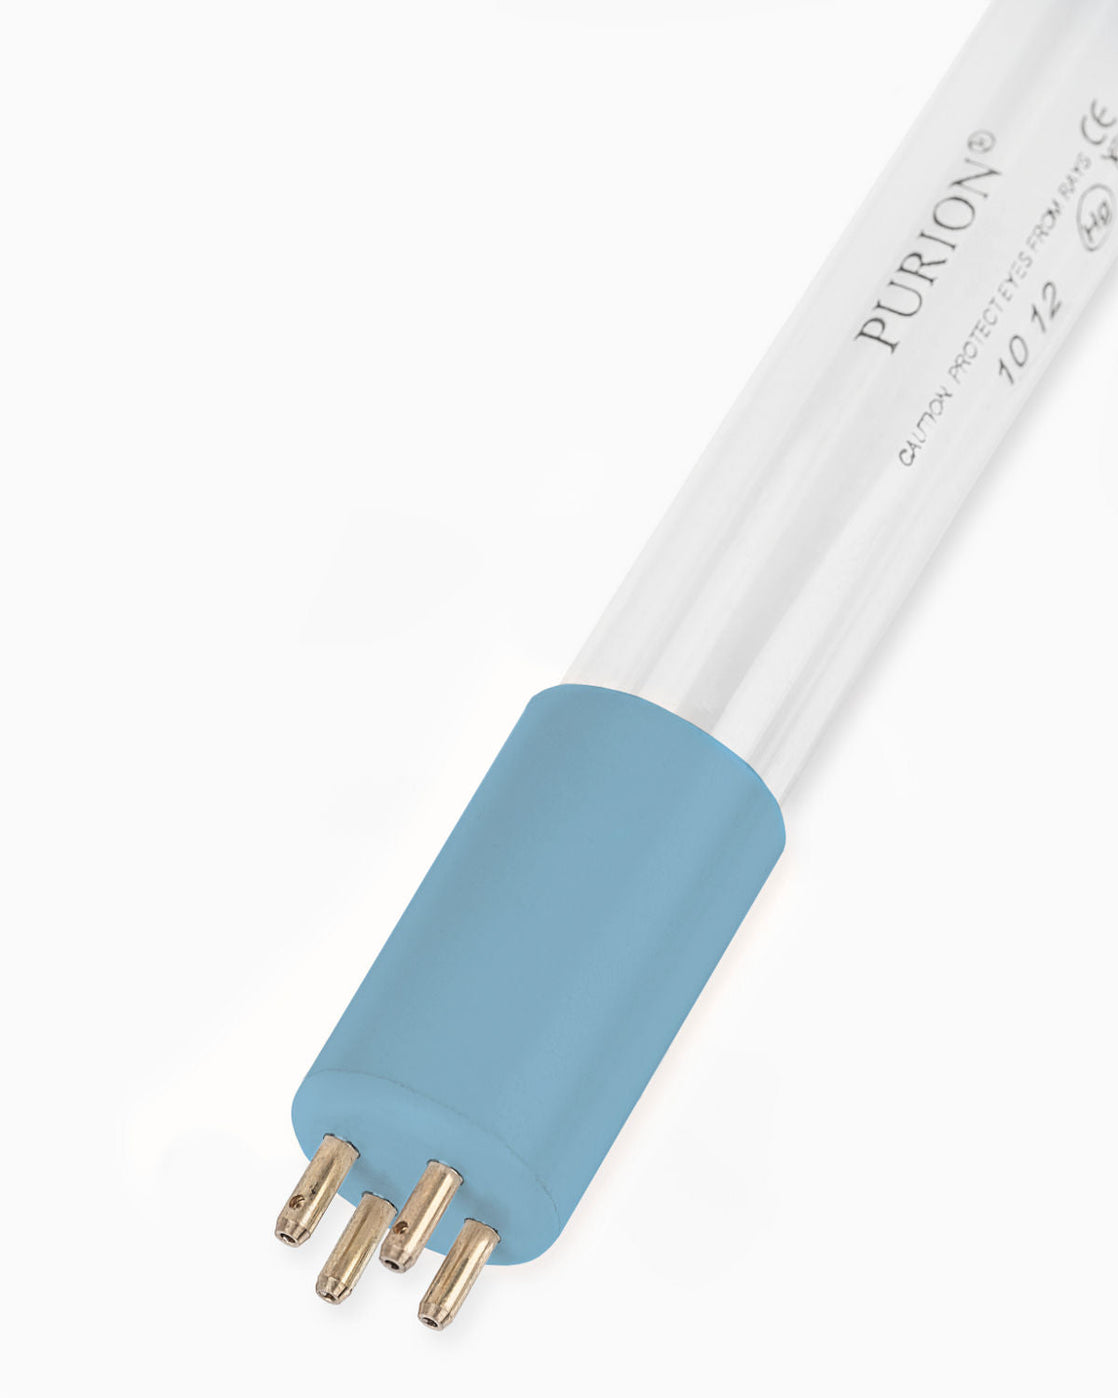 Eine PURION IBC DN225 17W SPL BS 12 V/24 V Blaulichtröhre auf weißem Hintergrund, die zur Wasserentnahme verwendet wird und Verunreinigungen effektiv beseitigt. (Markenname: UV Concept GmbH)